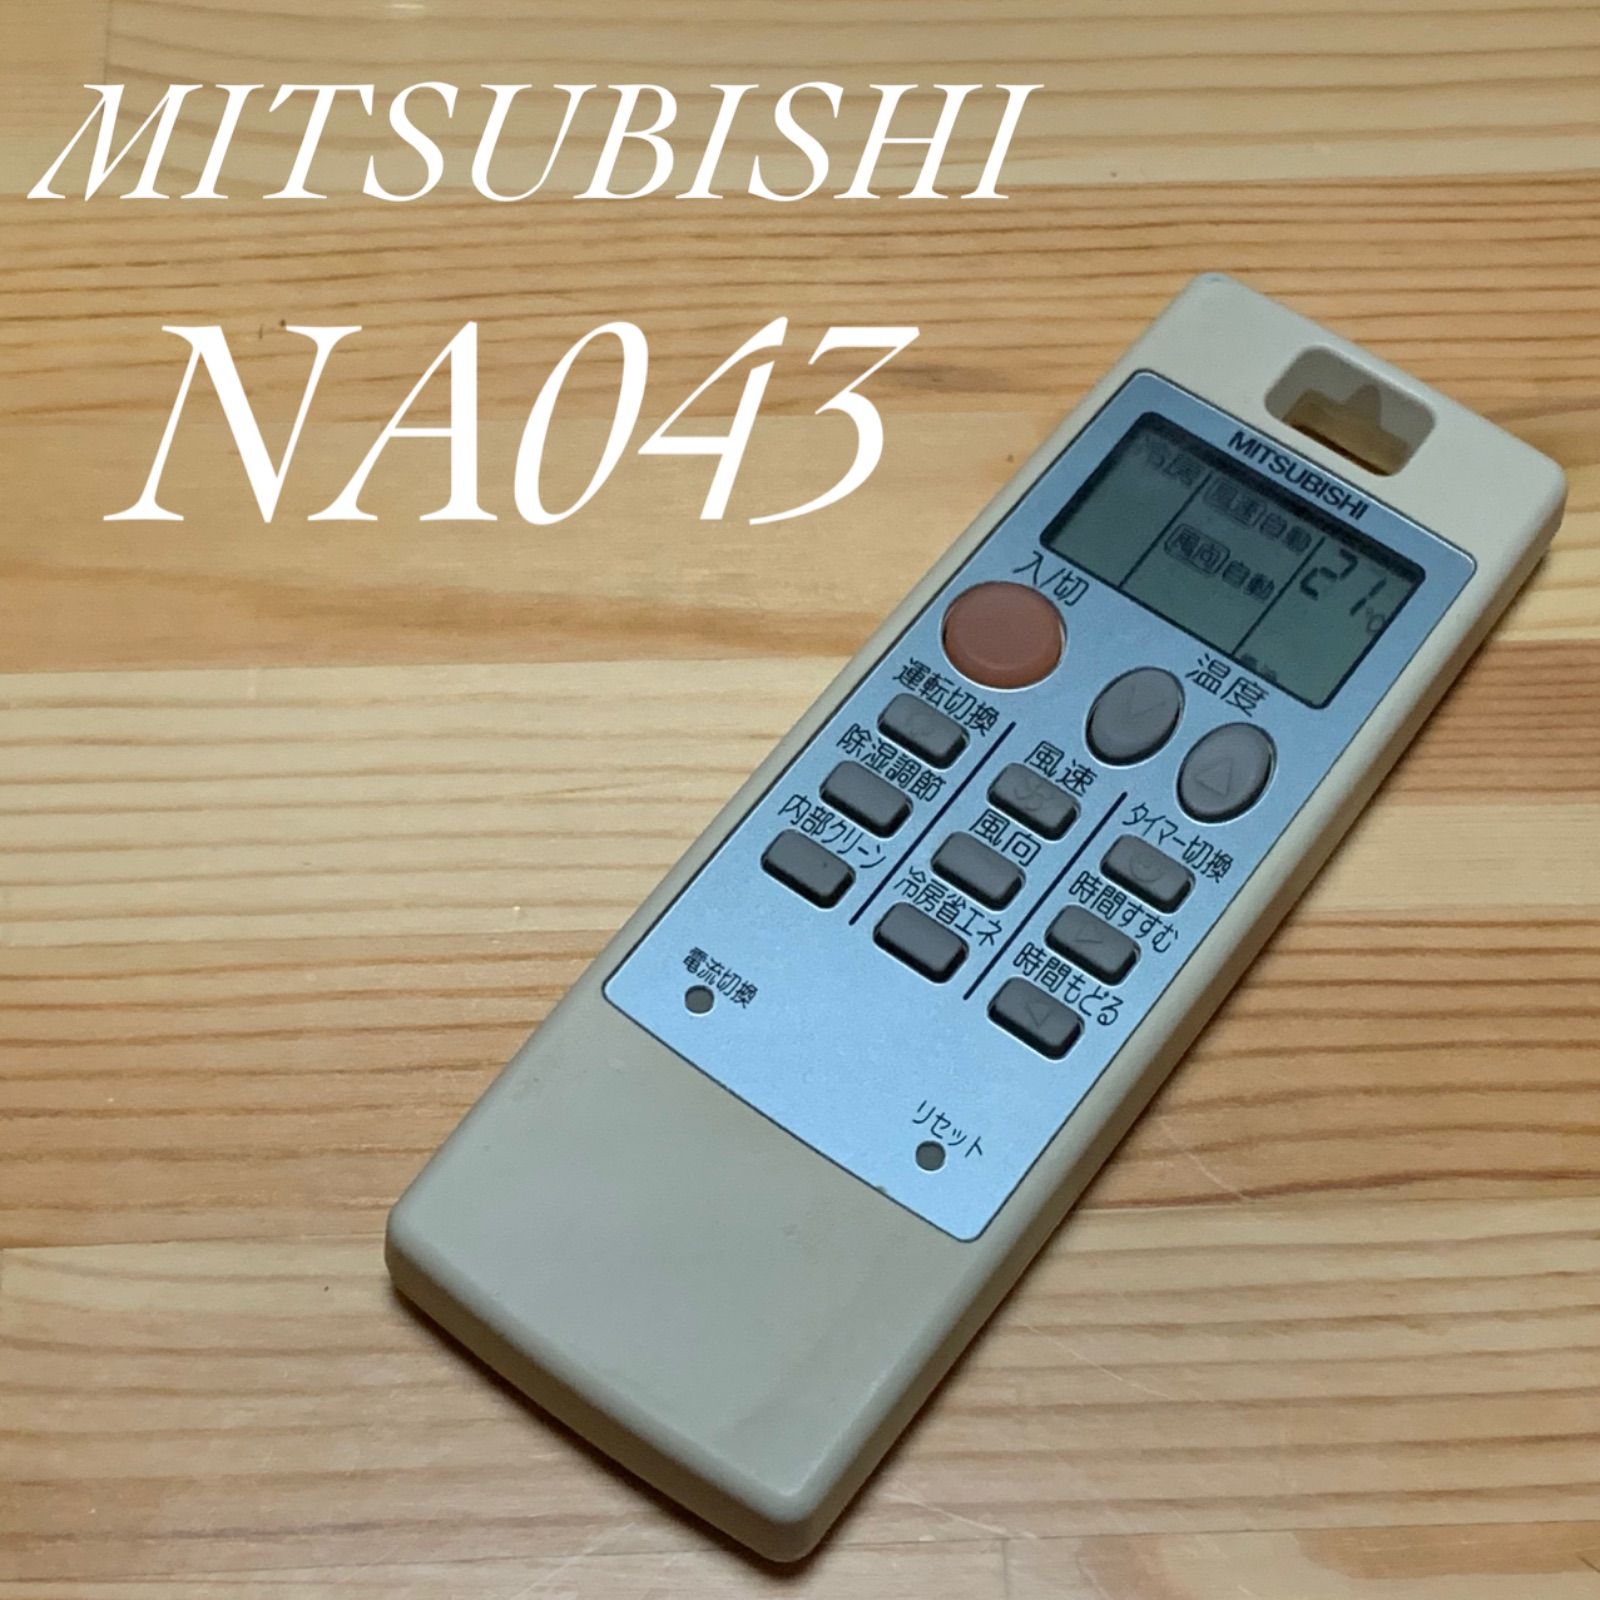 MITSUBISHI 三菱 NA043 エアコン リモコン